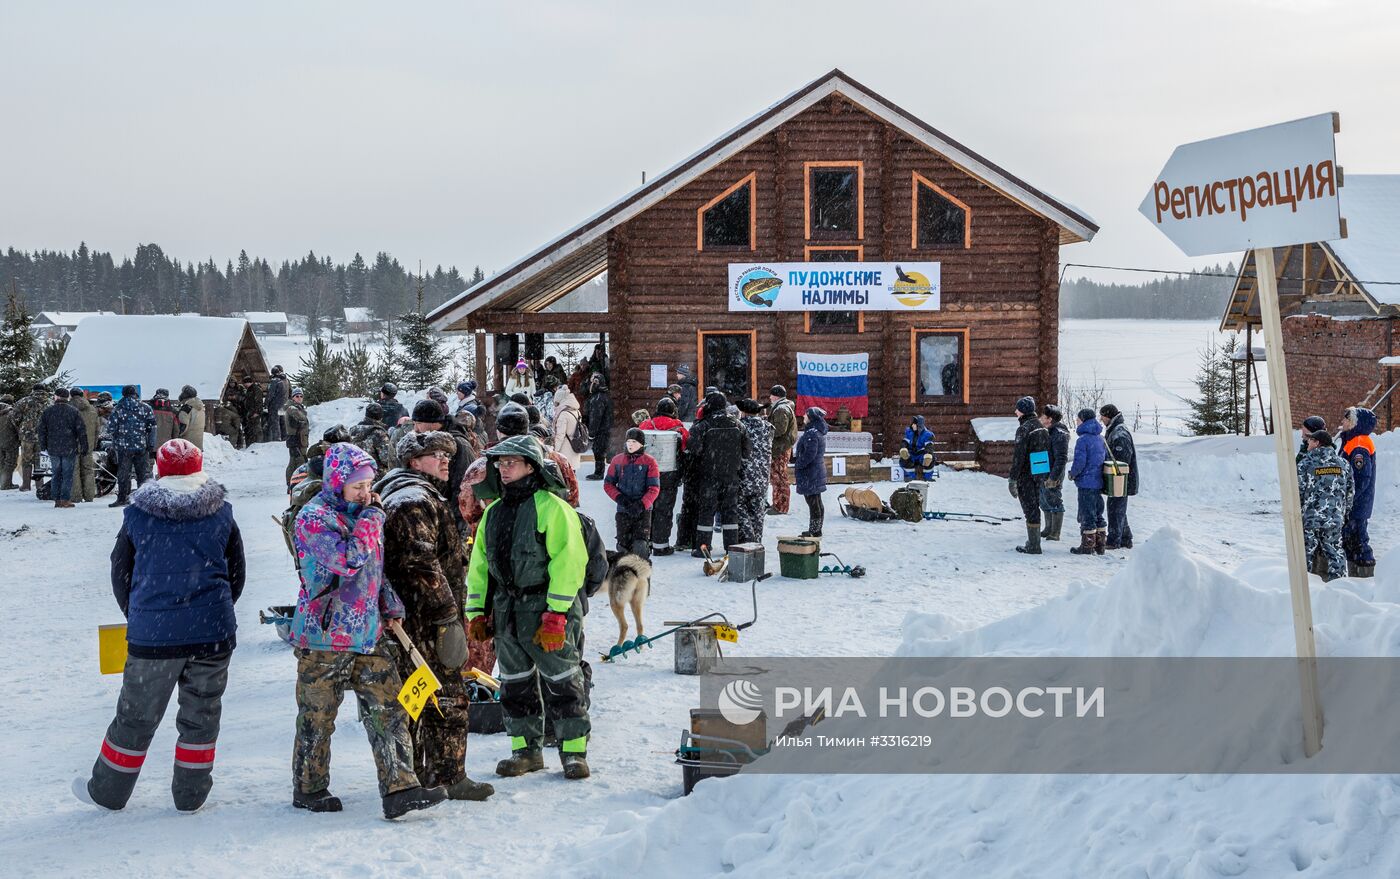 Рыболовный фестиваль "Пудожские налимы" в национальном парке "Водлозерский"